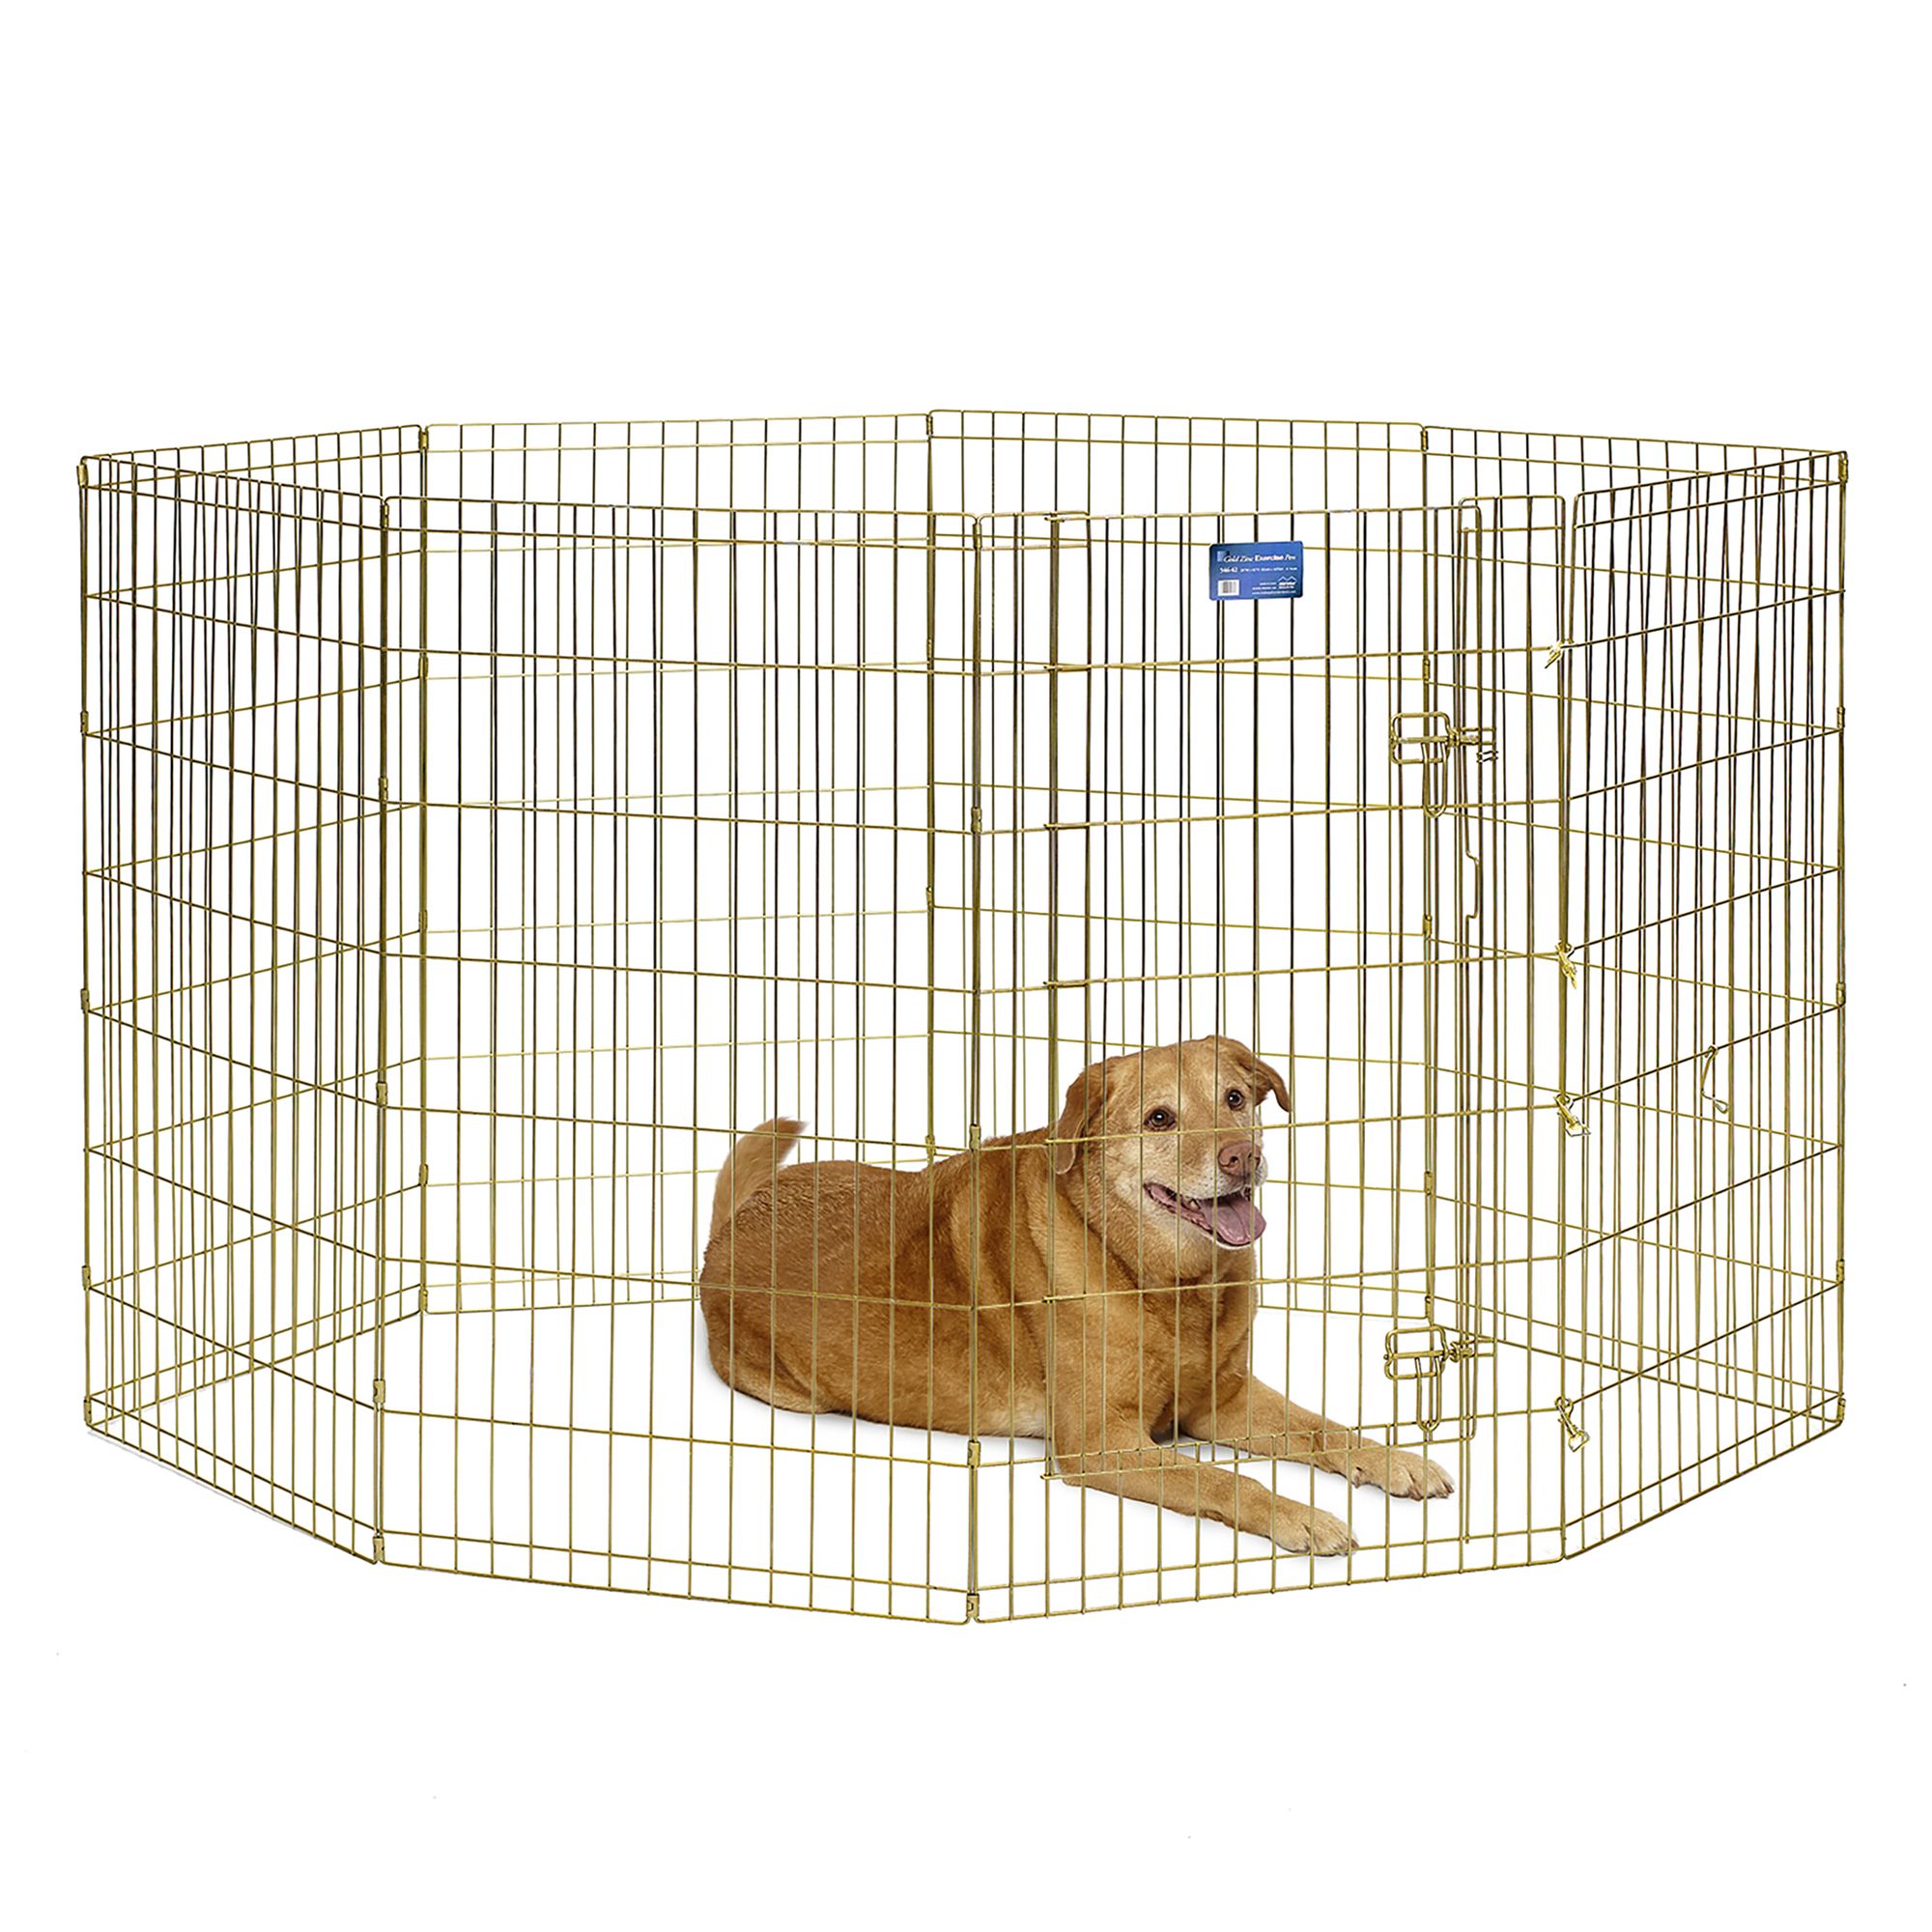 petsmart dog enclosures